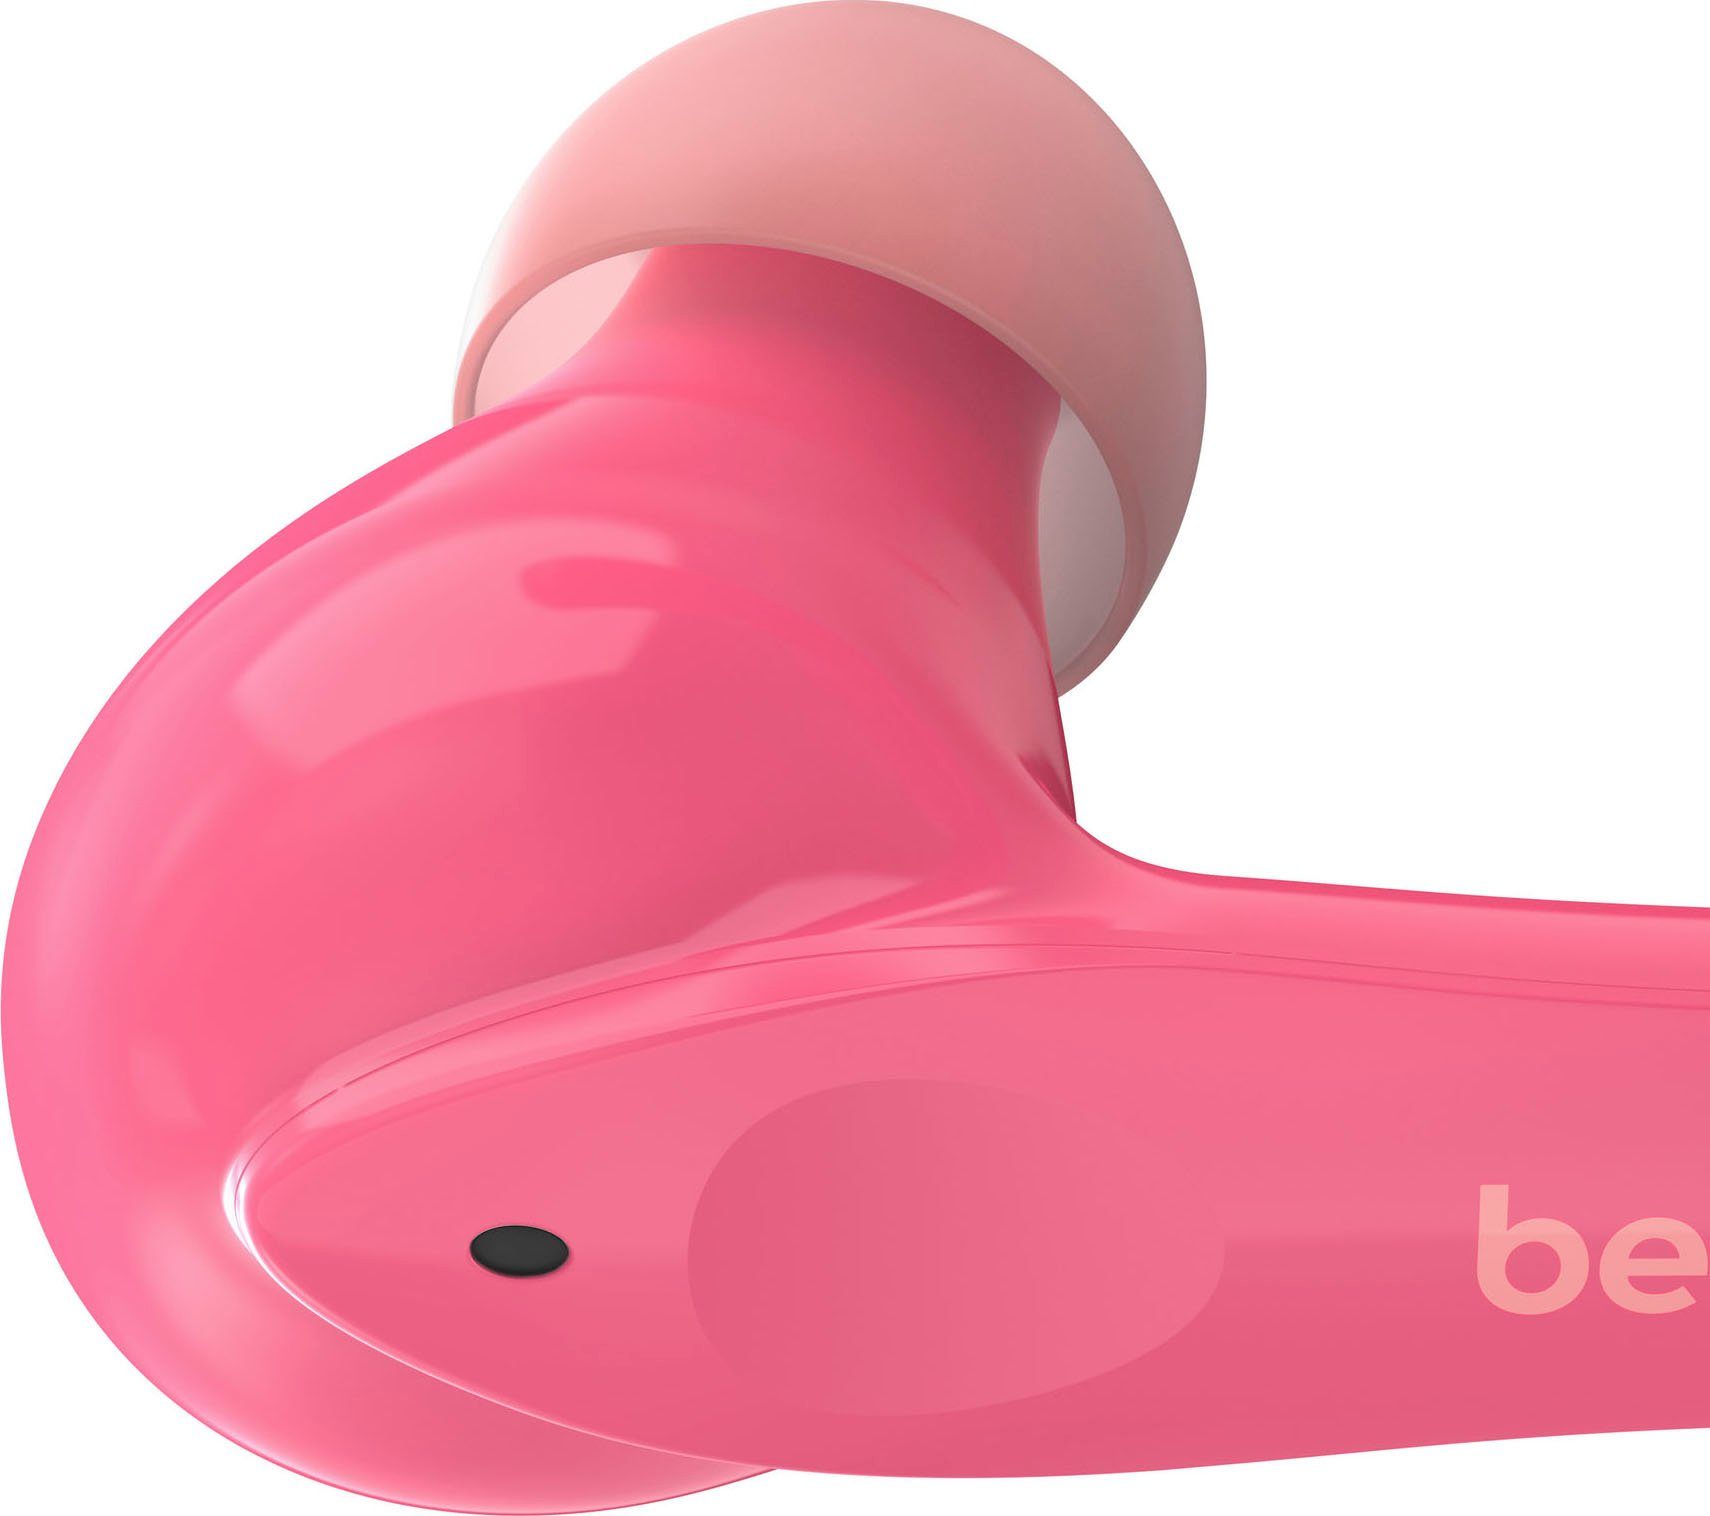 Belkin SOUNDFORM NANO am (auf pink wireless In-Ear-Kopfhörer Kopfhörer) Kinder 85 dB begrenzt; Kopfhörer 